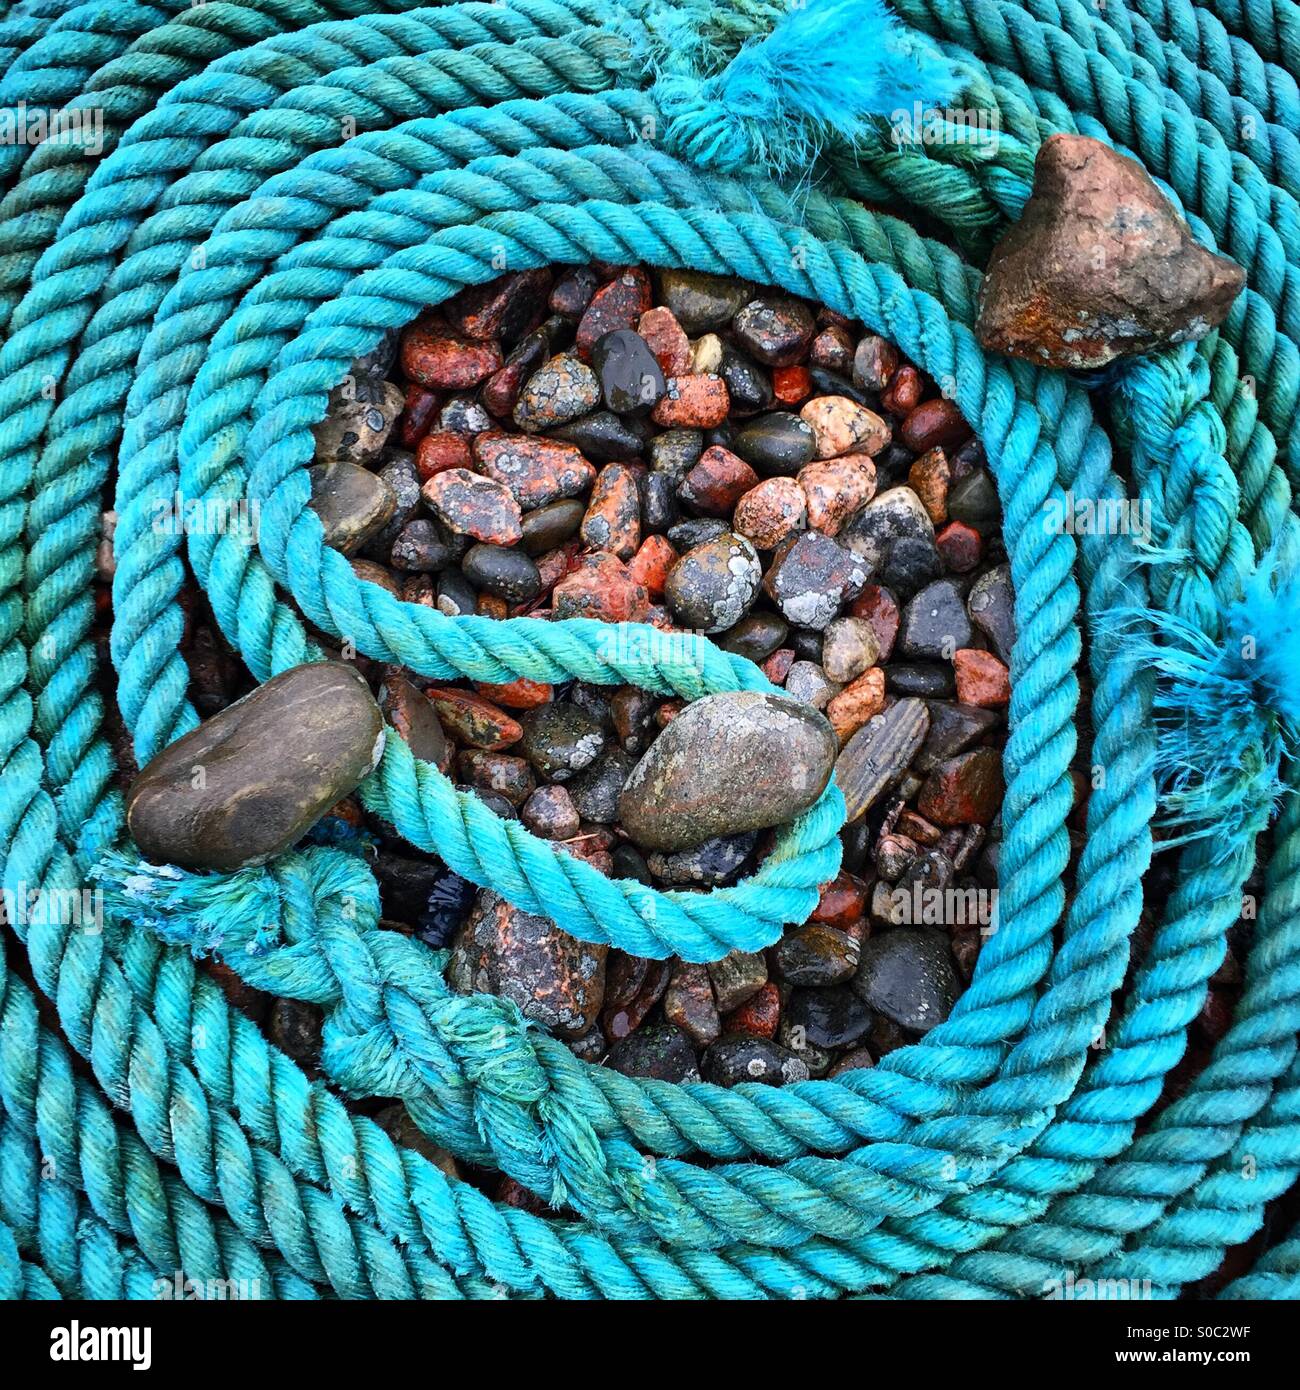 Une bobine de corde bleu bateau sur une plage décrivant la forme d'un neuf et maintenu en position par des pierres et cailloux Banque D'Images